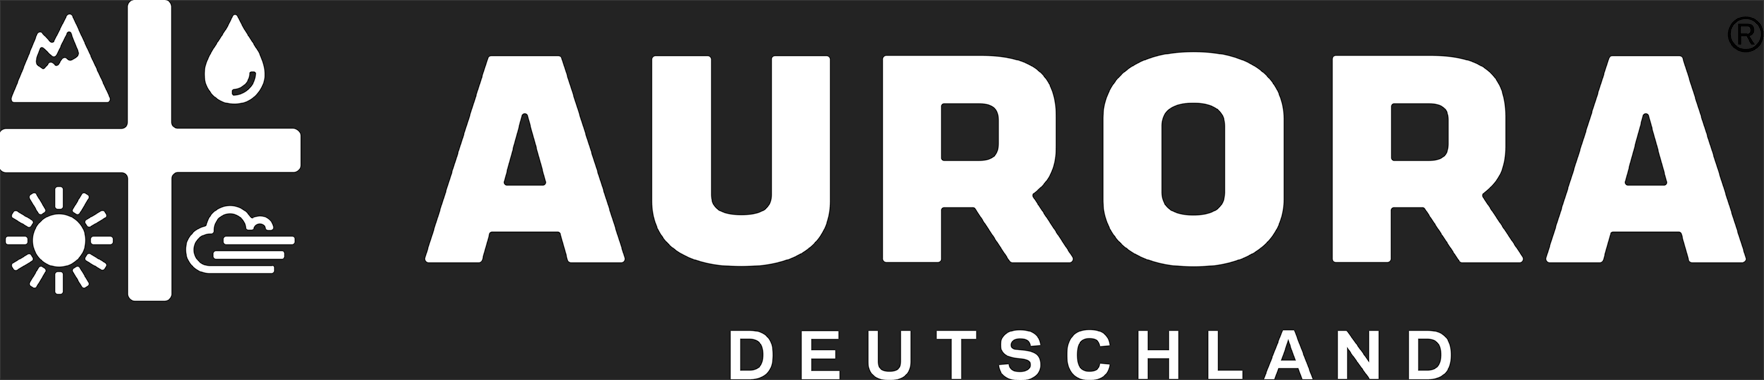 Man sieht das Firmenlogo von Aurora Deutschland.